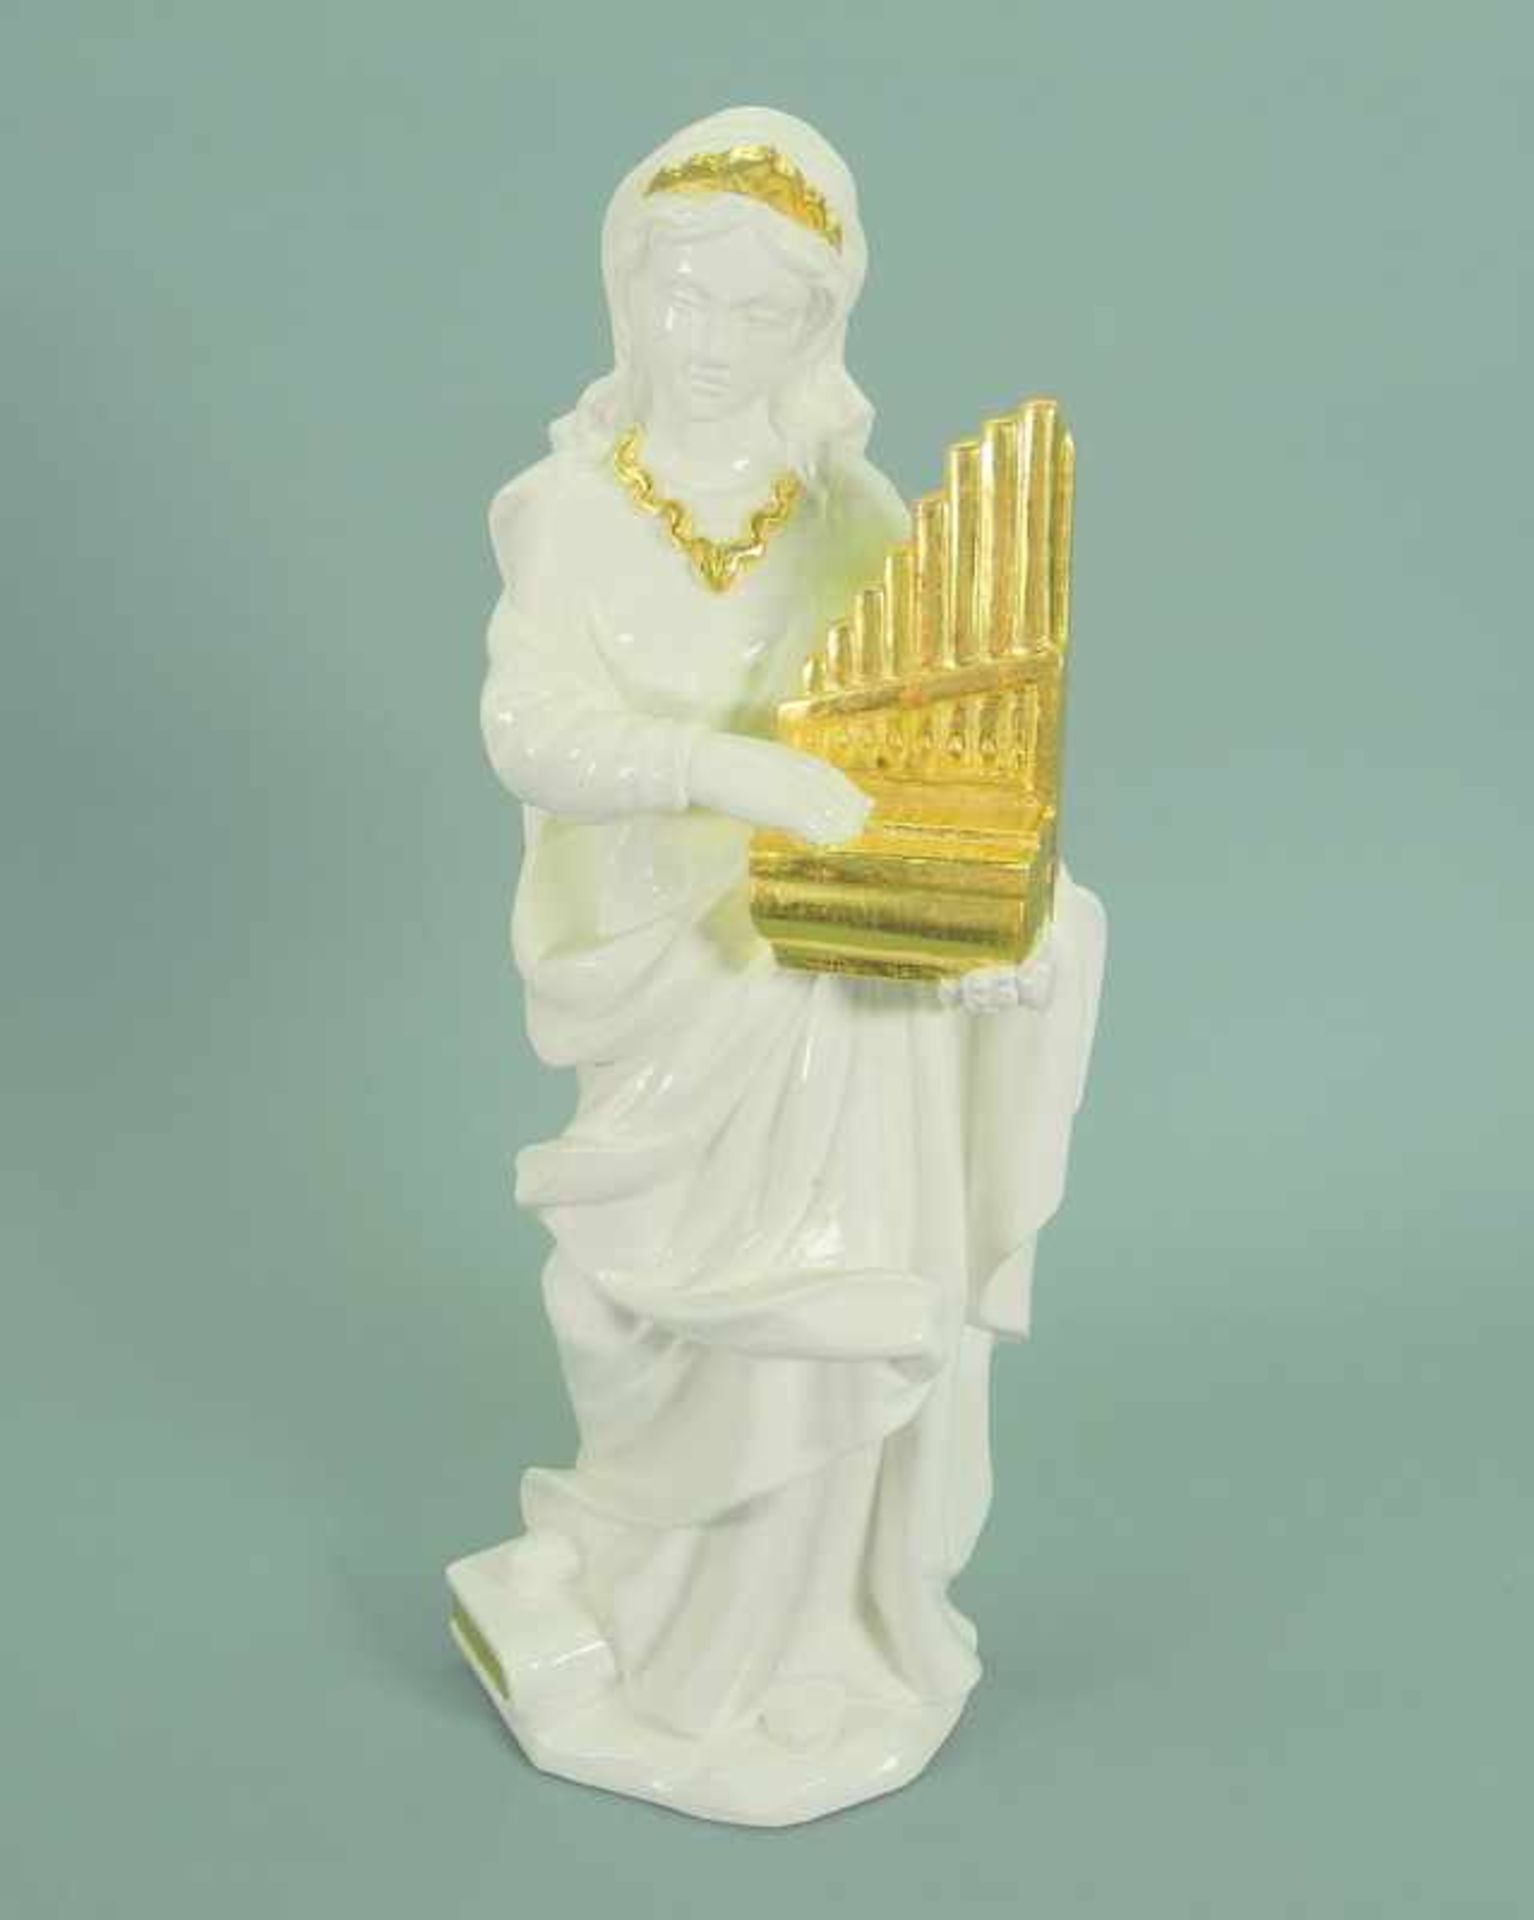 Albl, Die Heilige CäciliaHolz geschnitzt, weiß und gold gefasst. Am Boden mit dem Stempel der